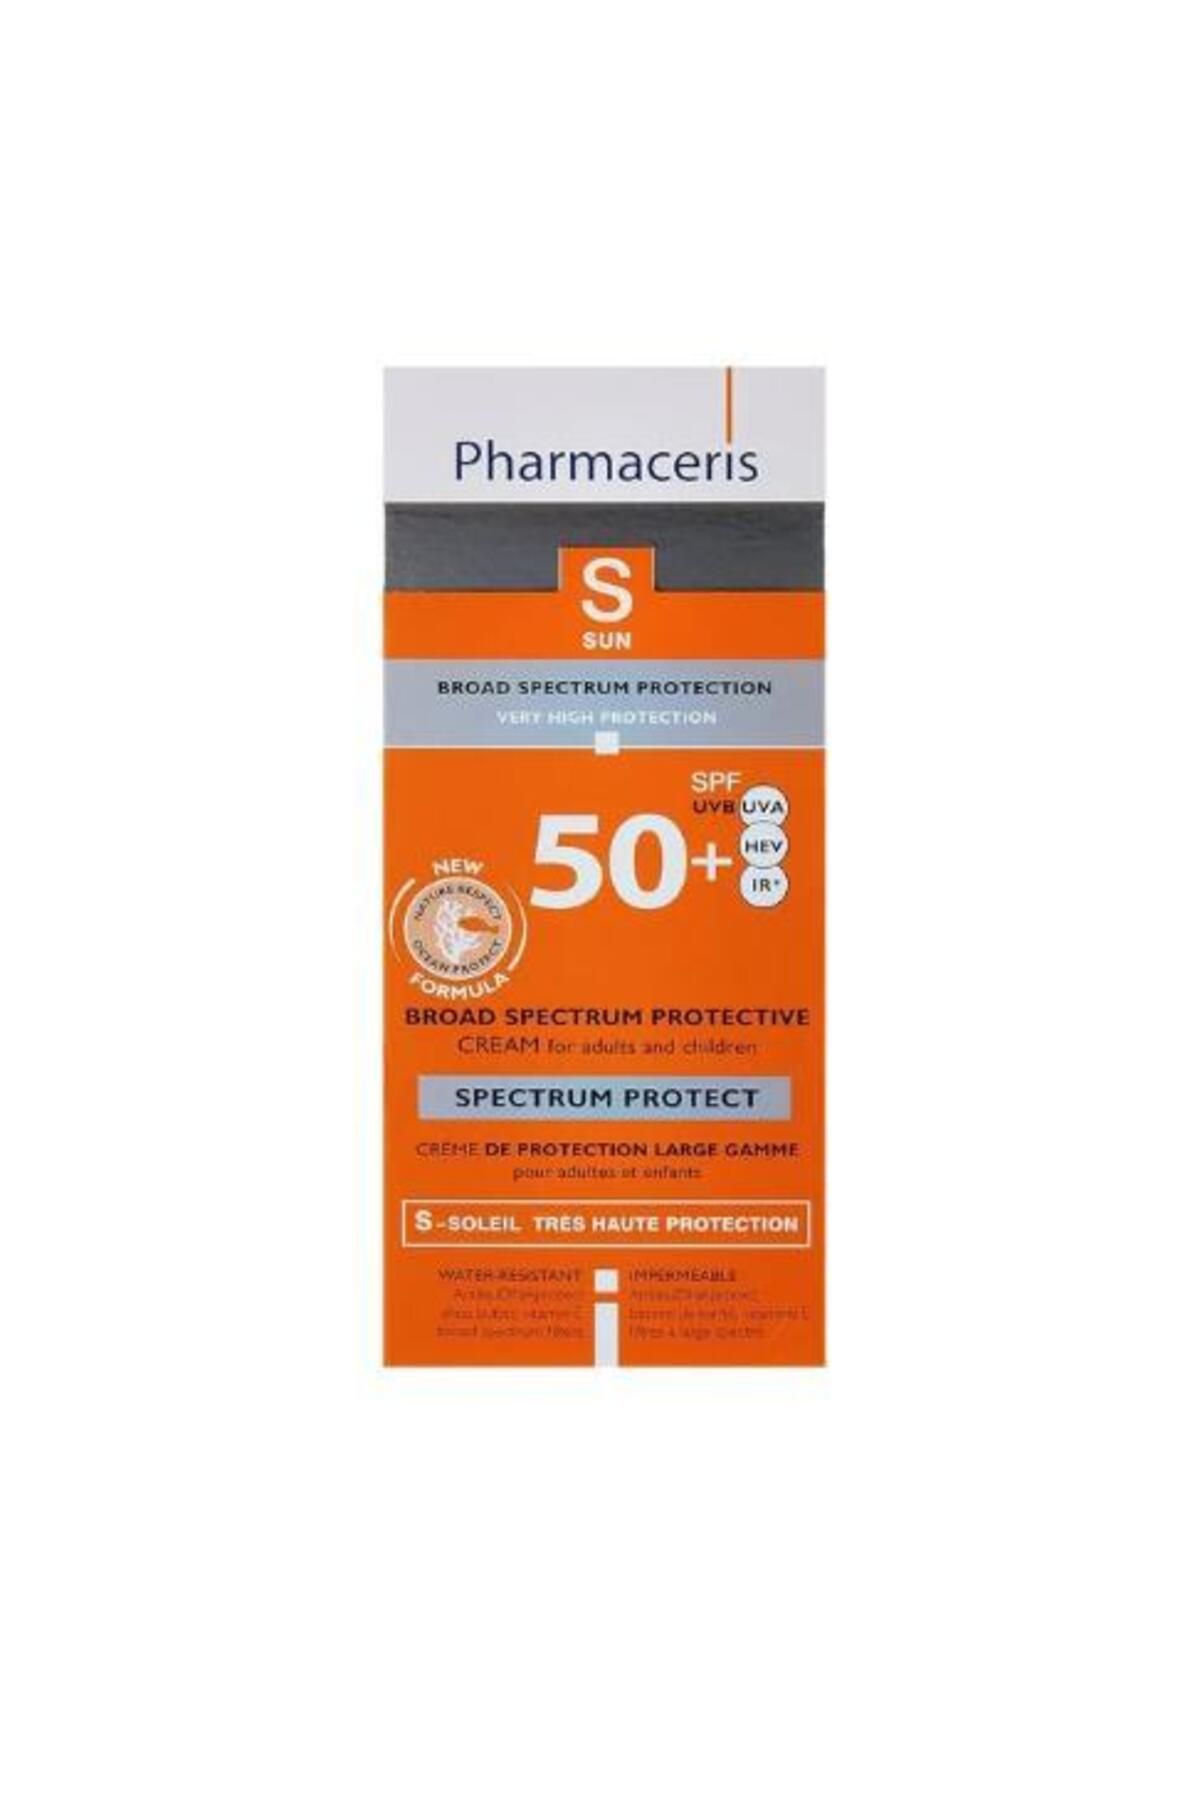 Pharmaceris Broad Spectrum Sun Protectıon Cream Spf 50+ Uvb + Uva + Hev+ Ir